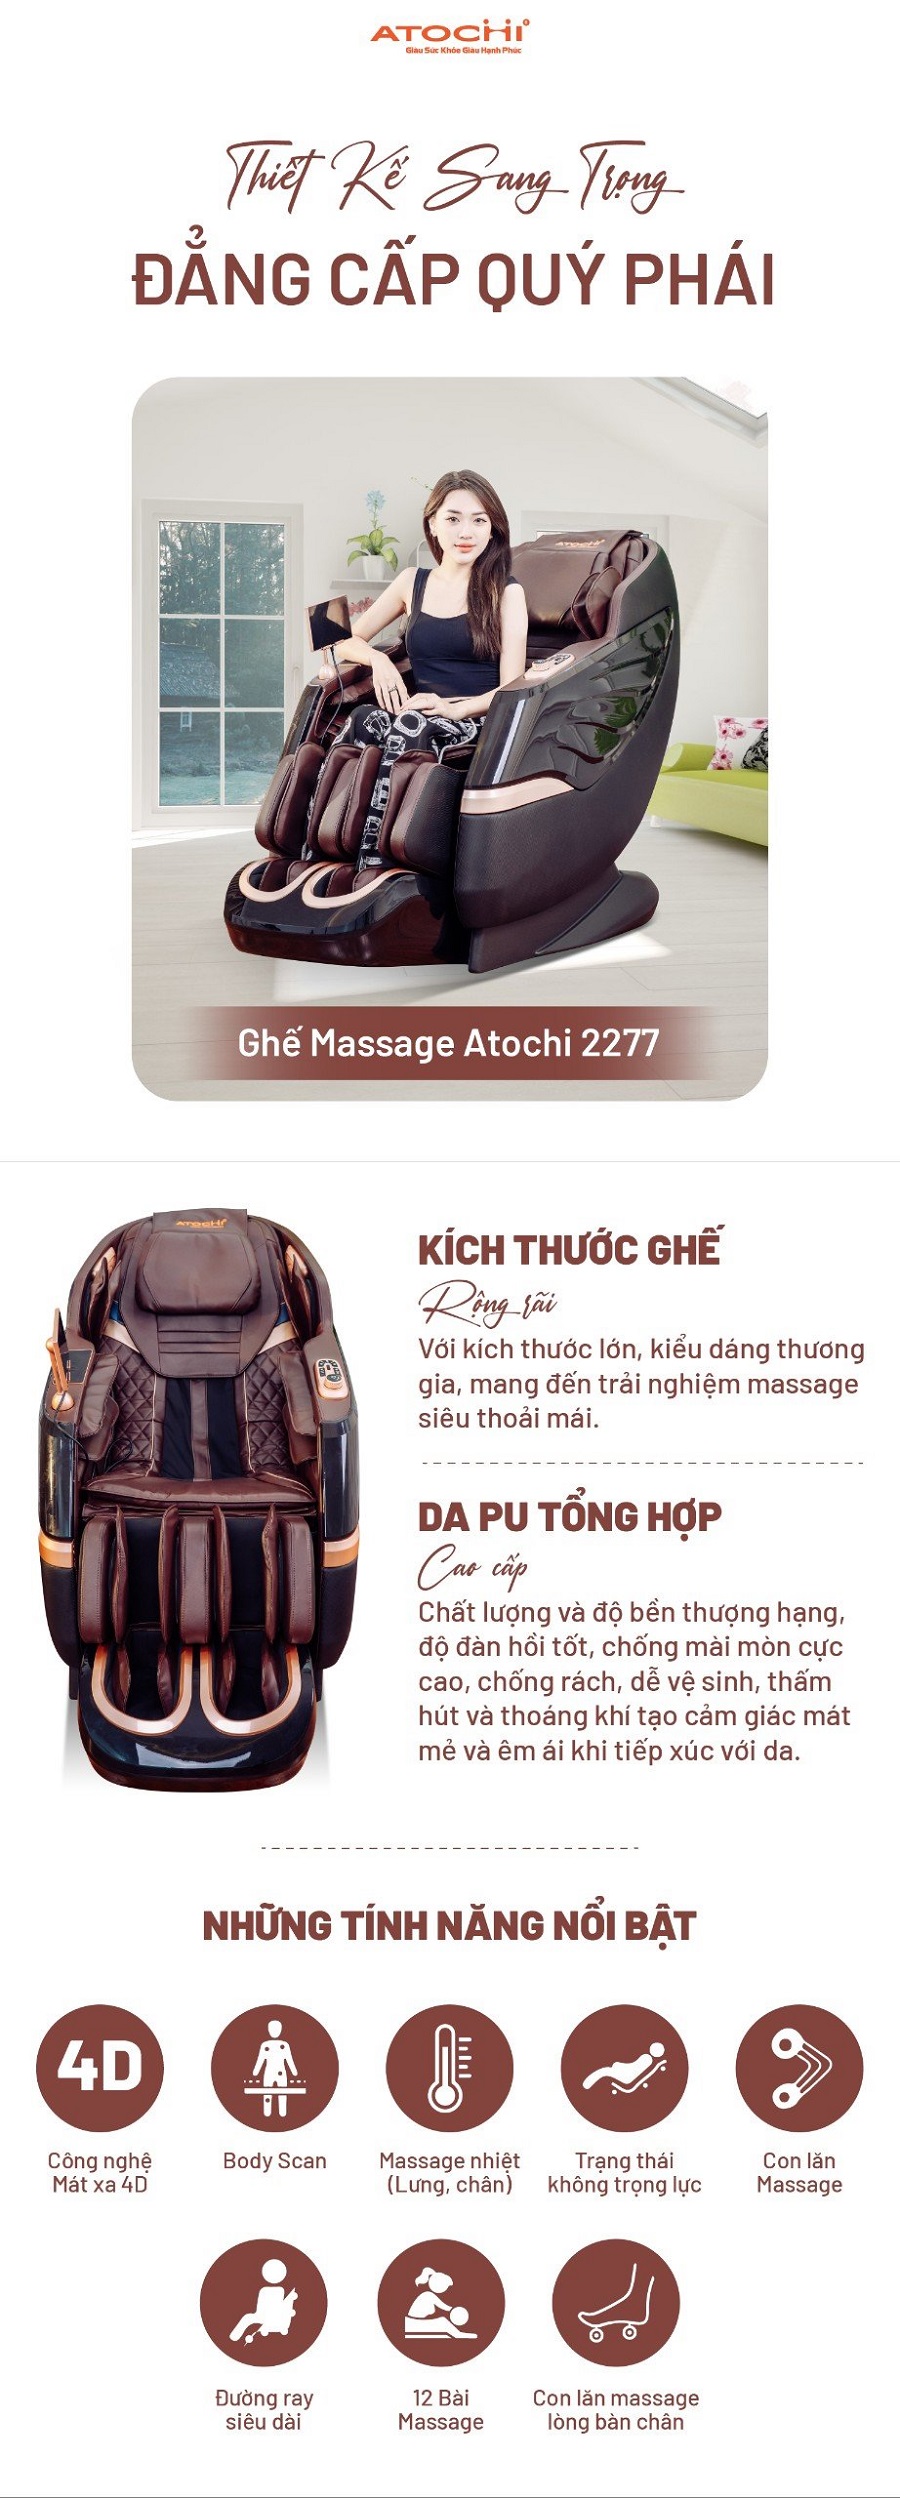 Tính năng nổi bật của ghế massage Atochi 2277